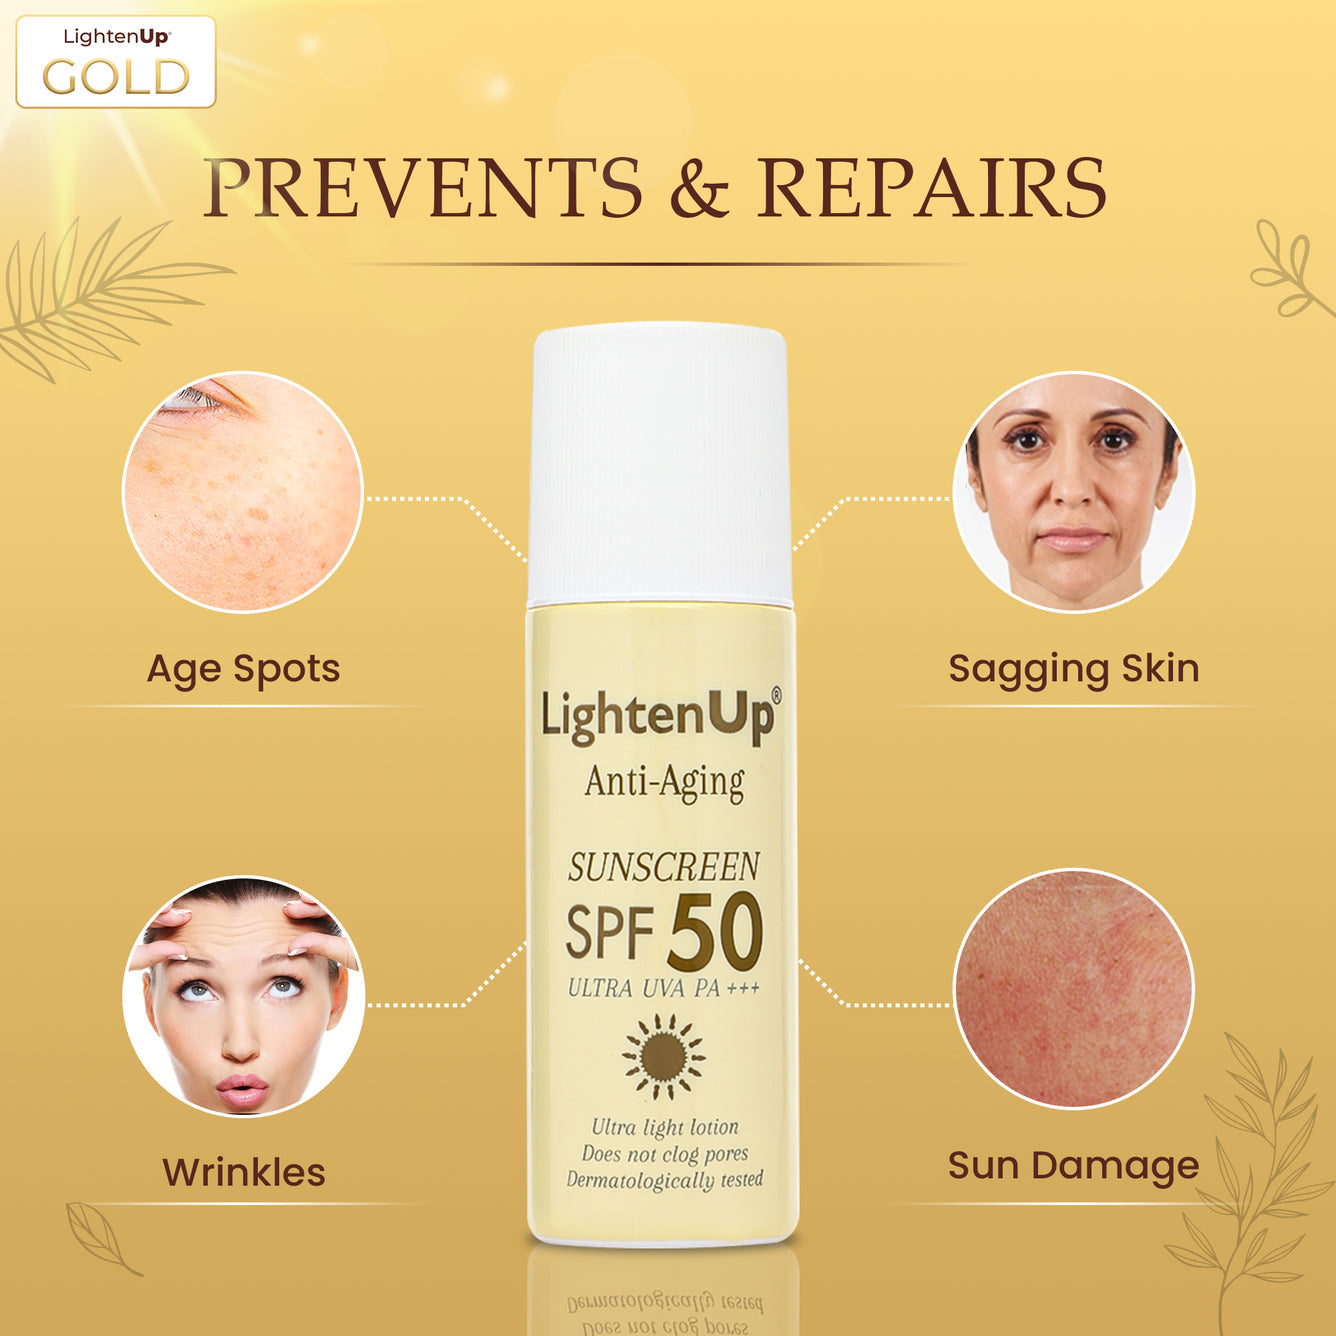 Lighten Up GOLD Anti-Aging Sunscreen SPF 50+  90ml